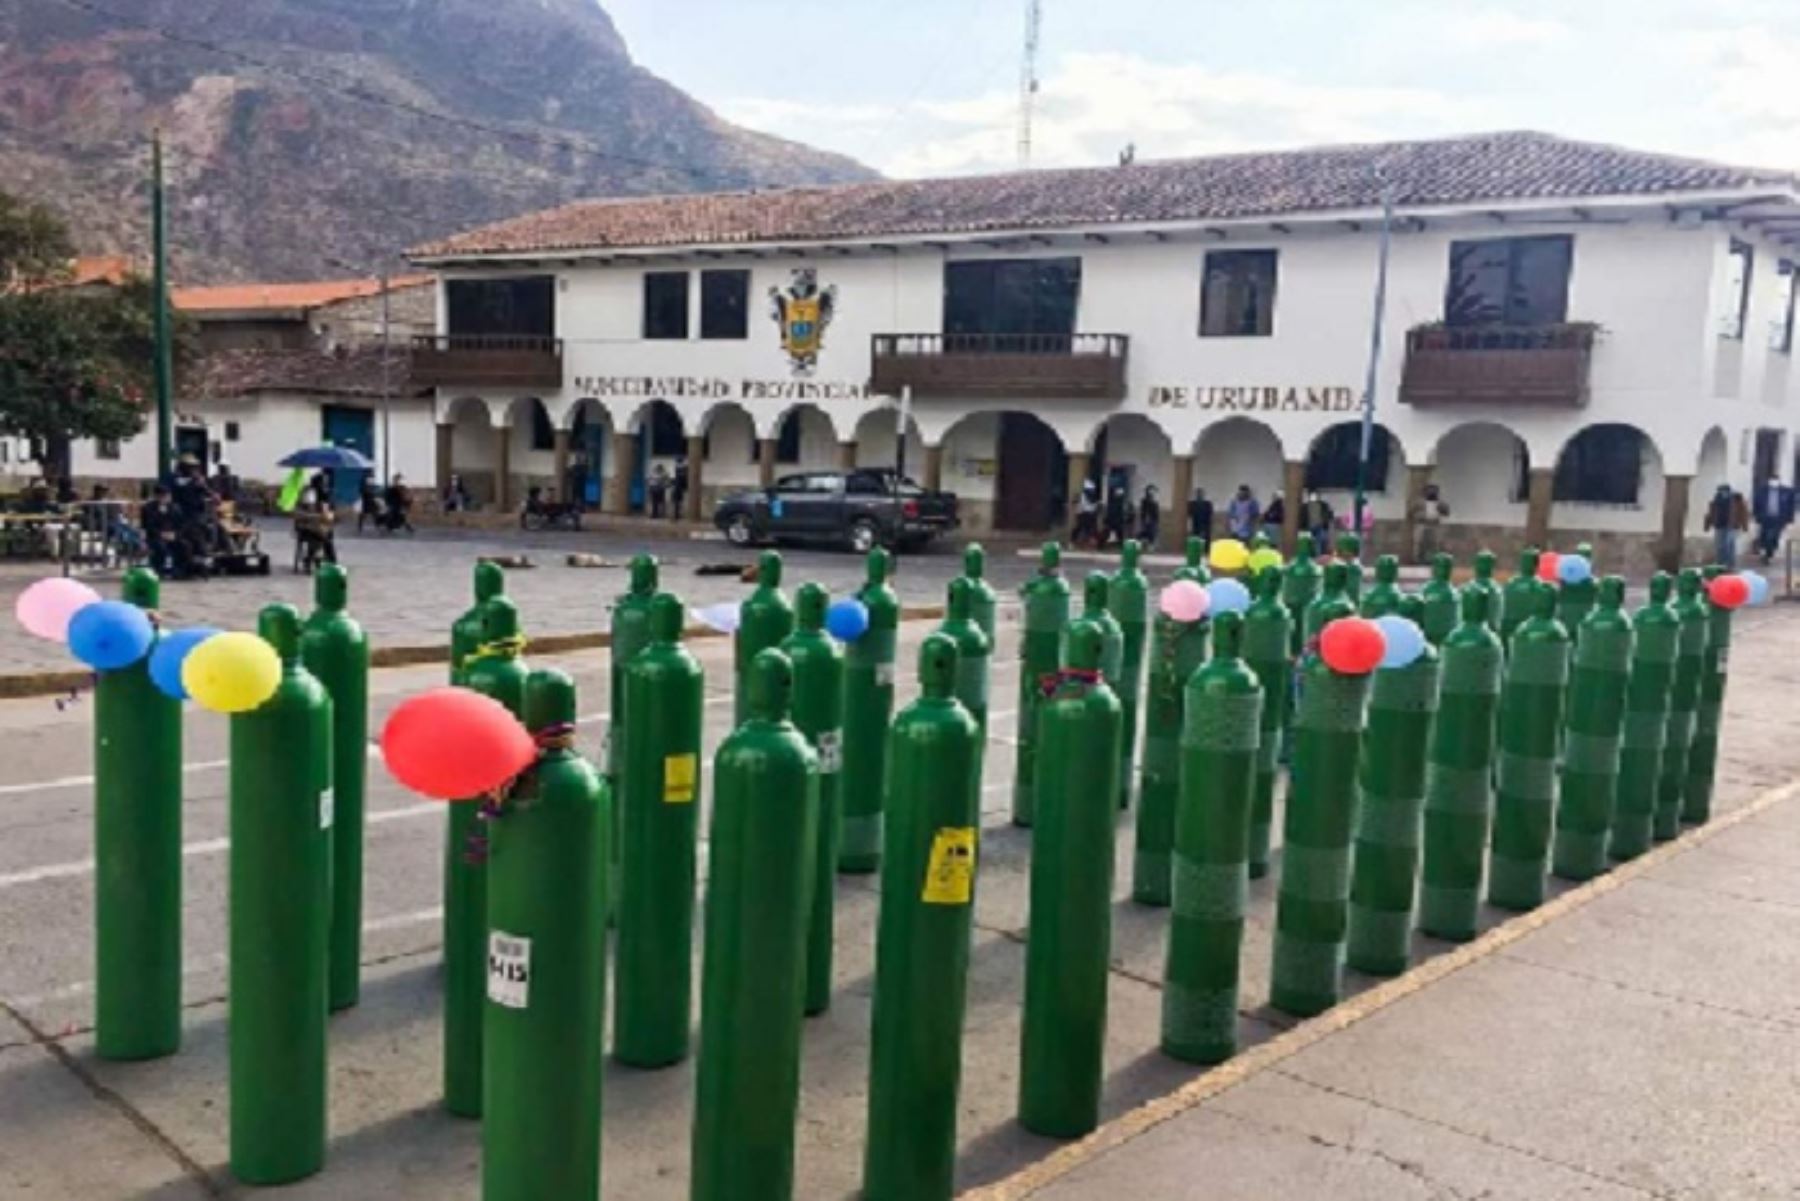 Se entregaron 80 balones de oxígeno adquiridos con dinero de la colecta pública realizada por la Asociación Civil "Respira Urubamba", en el que participó activamente la población, instituciones públicas, privadas y la sociedad civil.